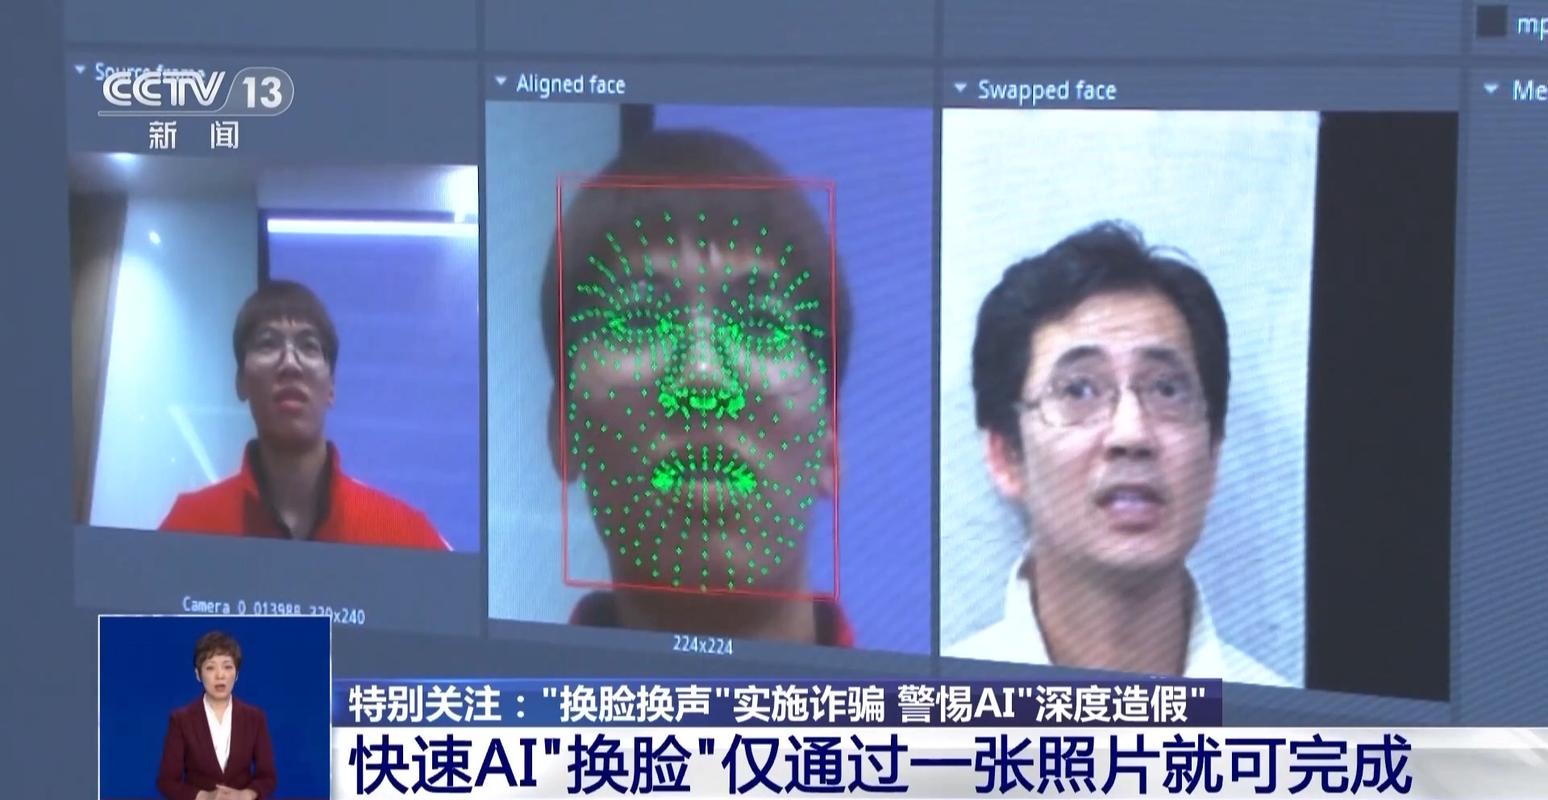 AI换脸技术带来的影响